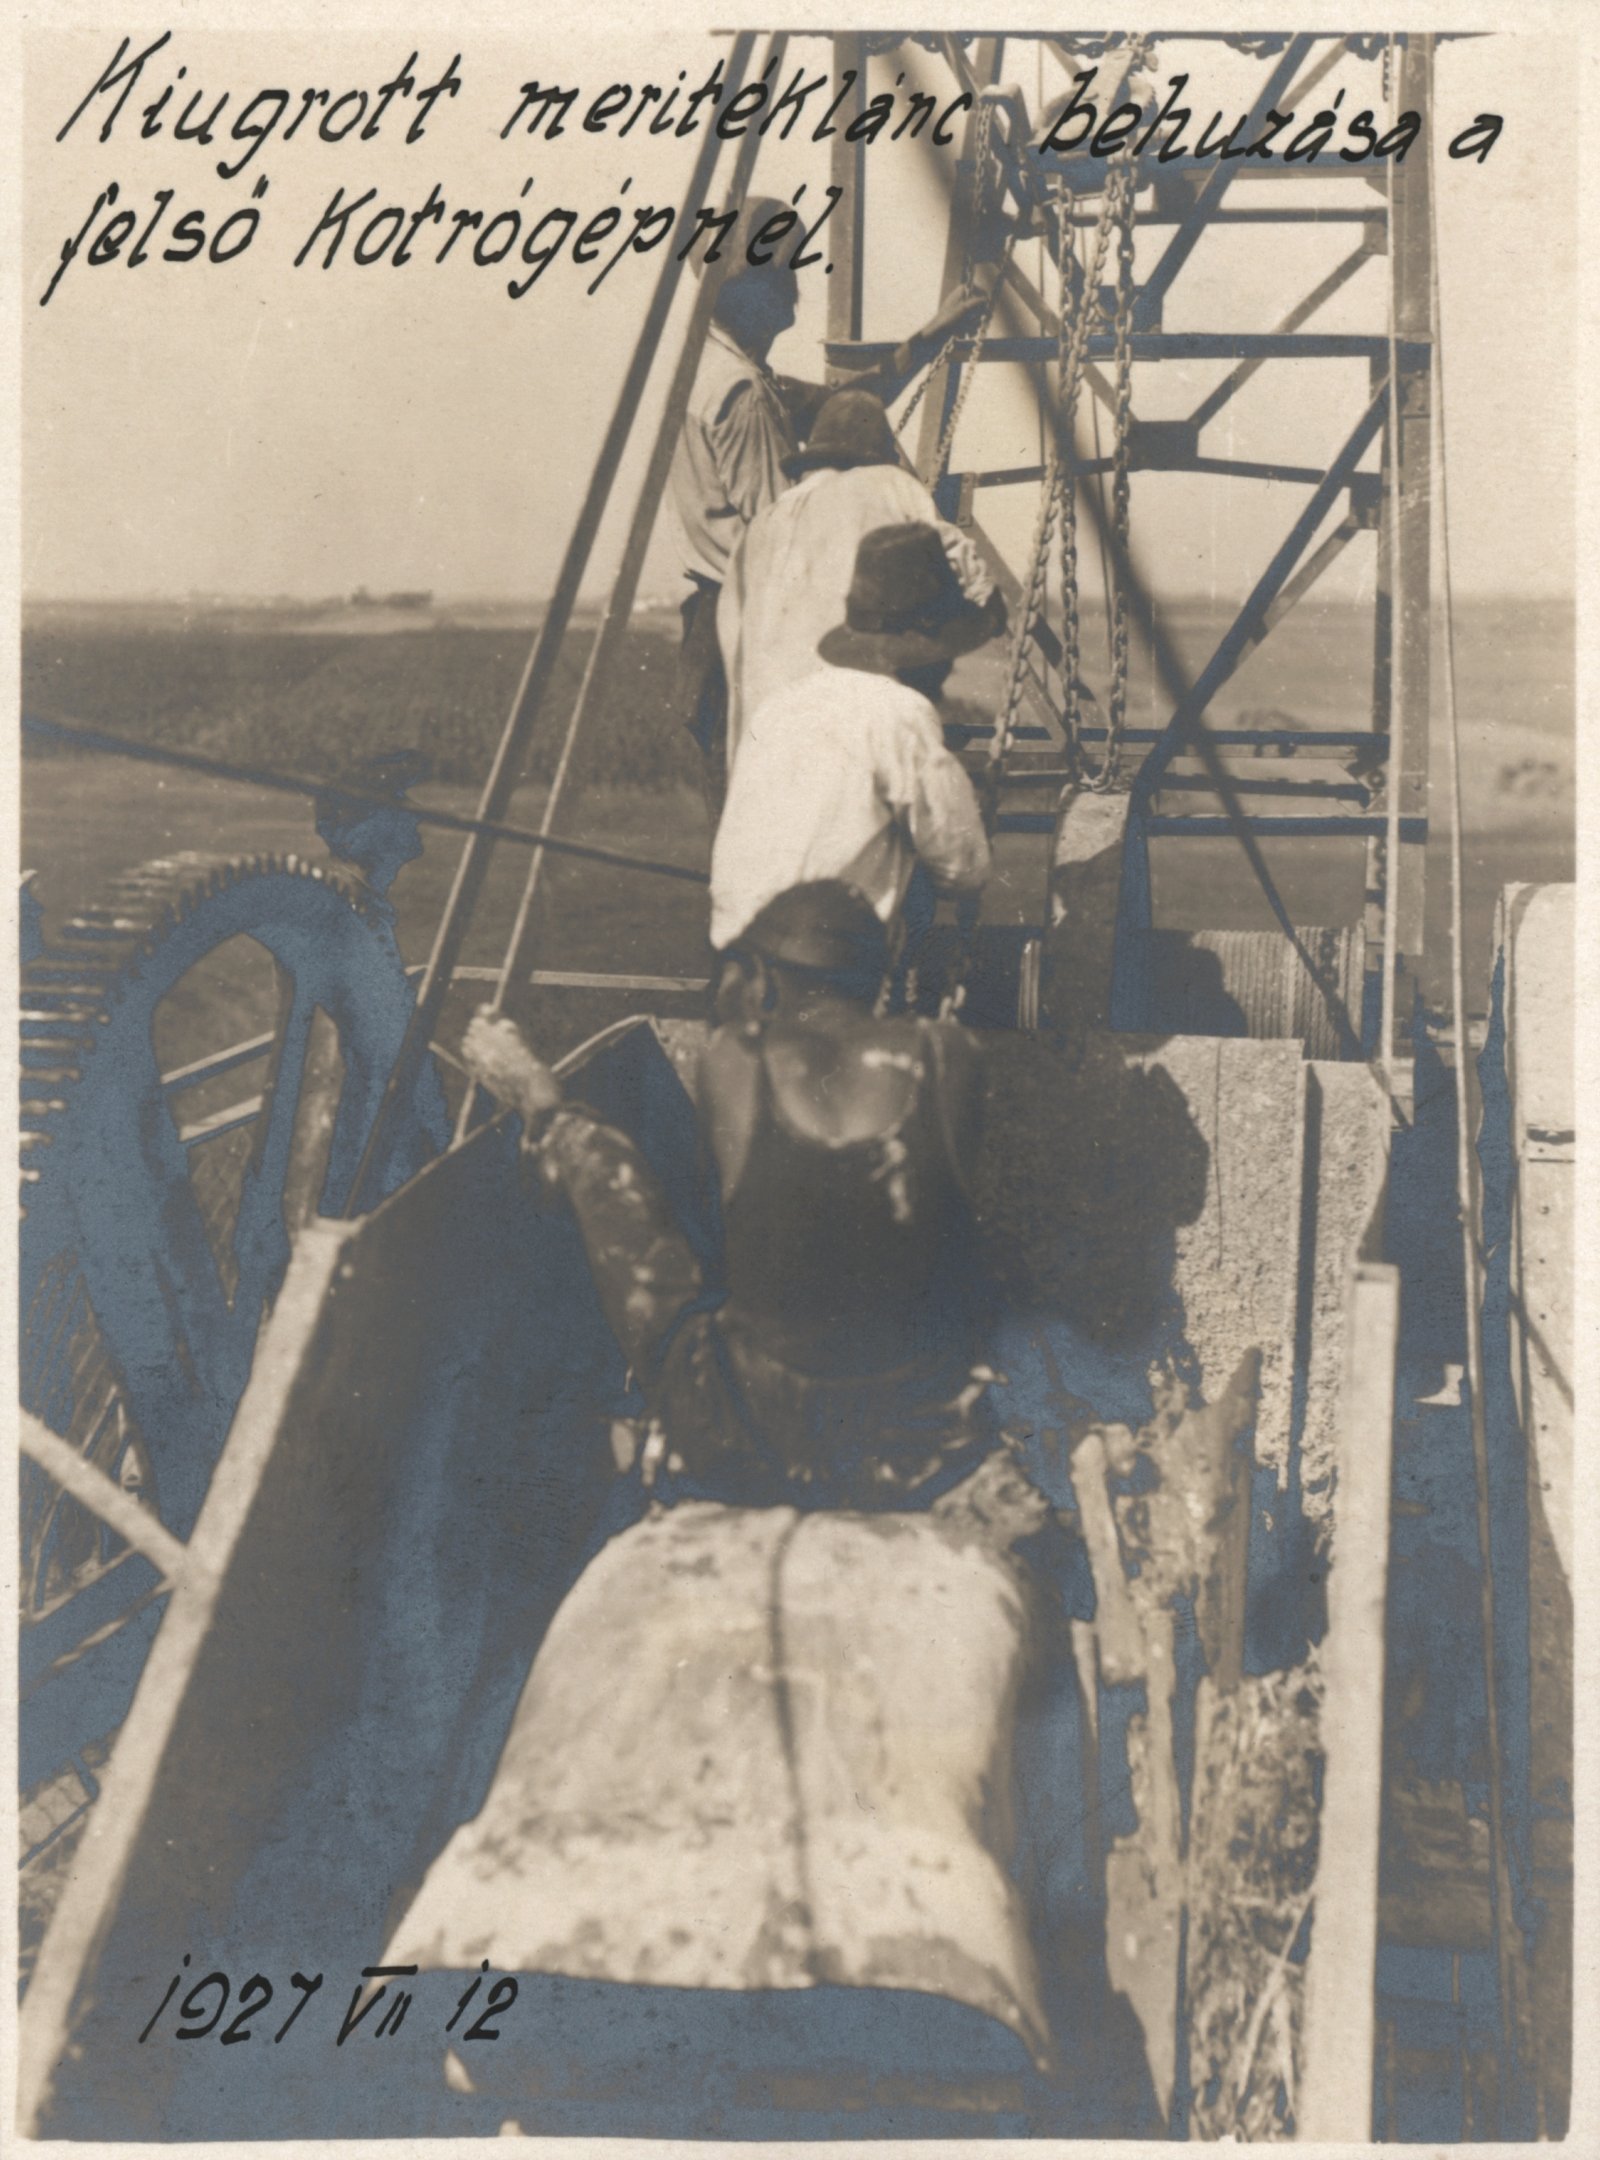 Kiugrott merítéklánc behúzása a felső kotrógépnél, 1927. július 12. (Magyar Környezetvédelmi és Vízügyi Múzeum - Duna Múzeum CC BY-NC-SA)